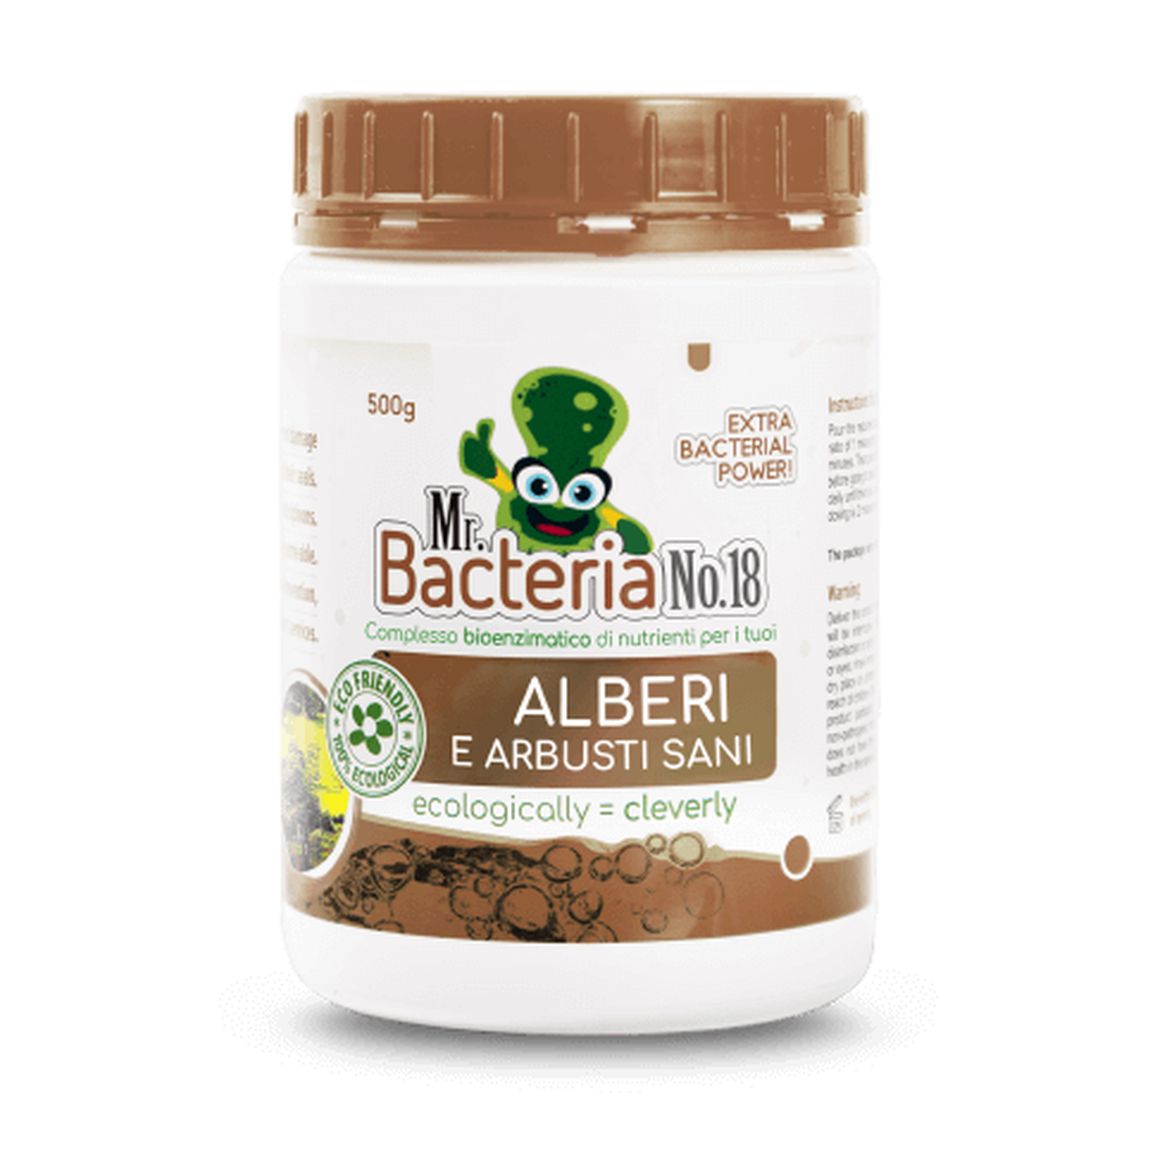 Mr. Bacteria No.18 Complesso bioenzimatico di nutrienti per i tuoi